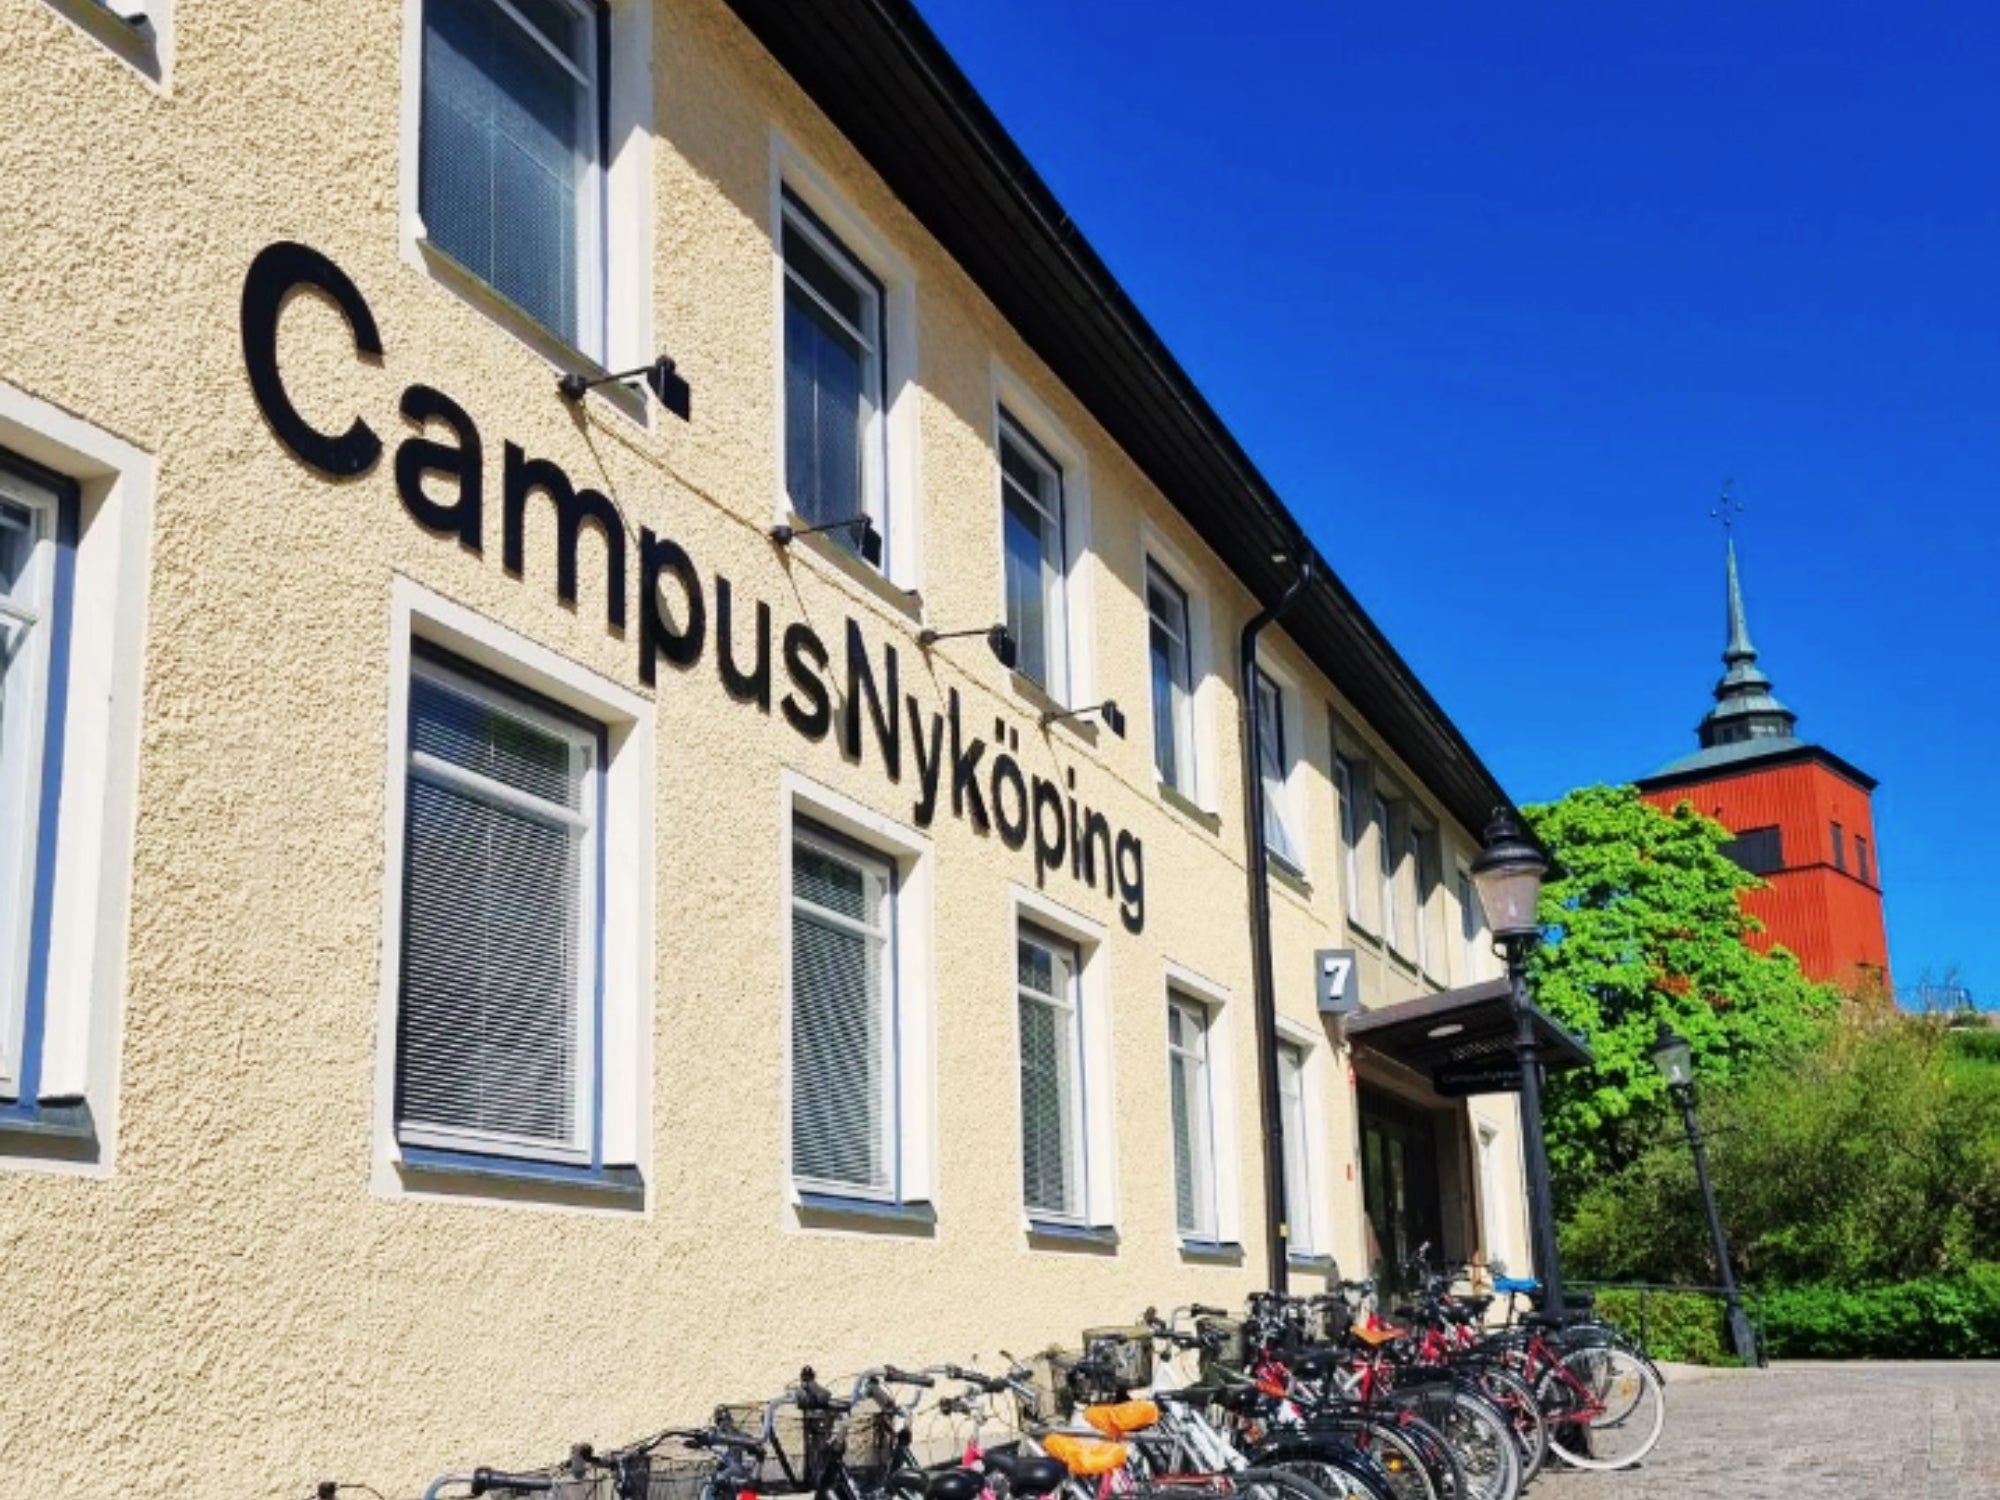 Kundcase campus nyköping